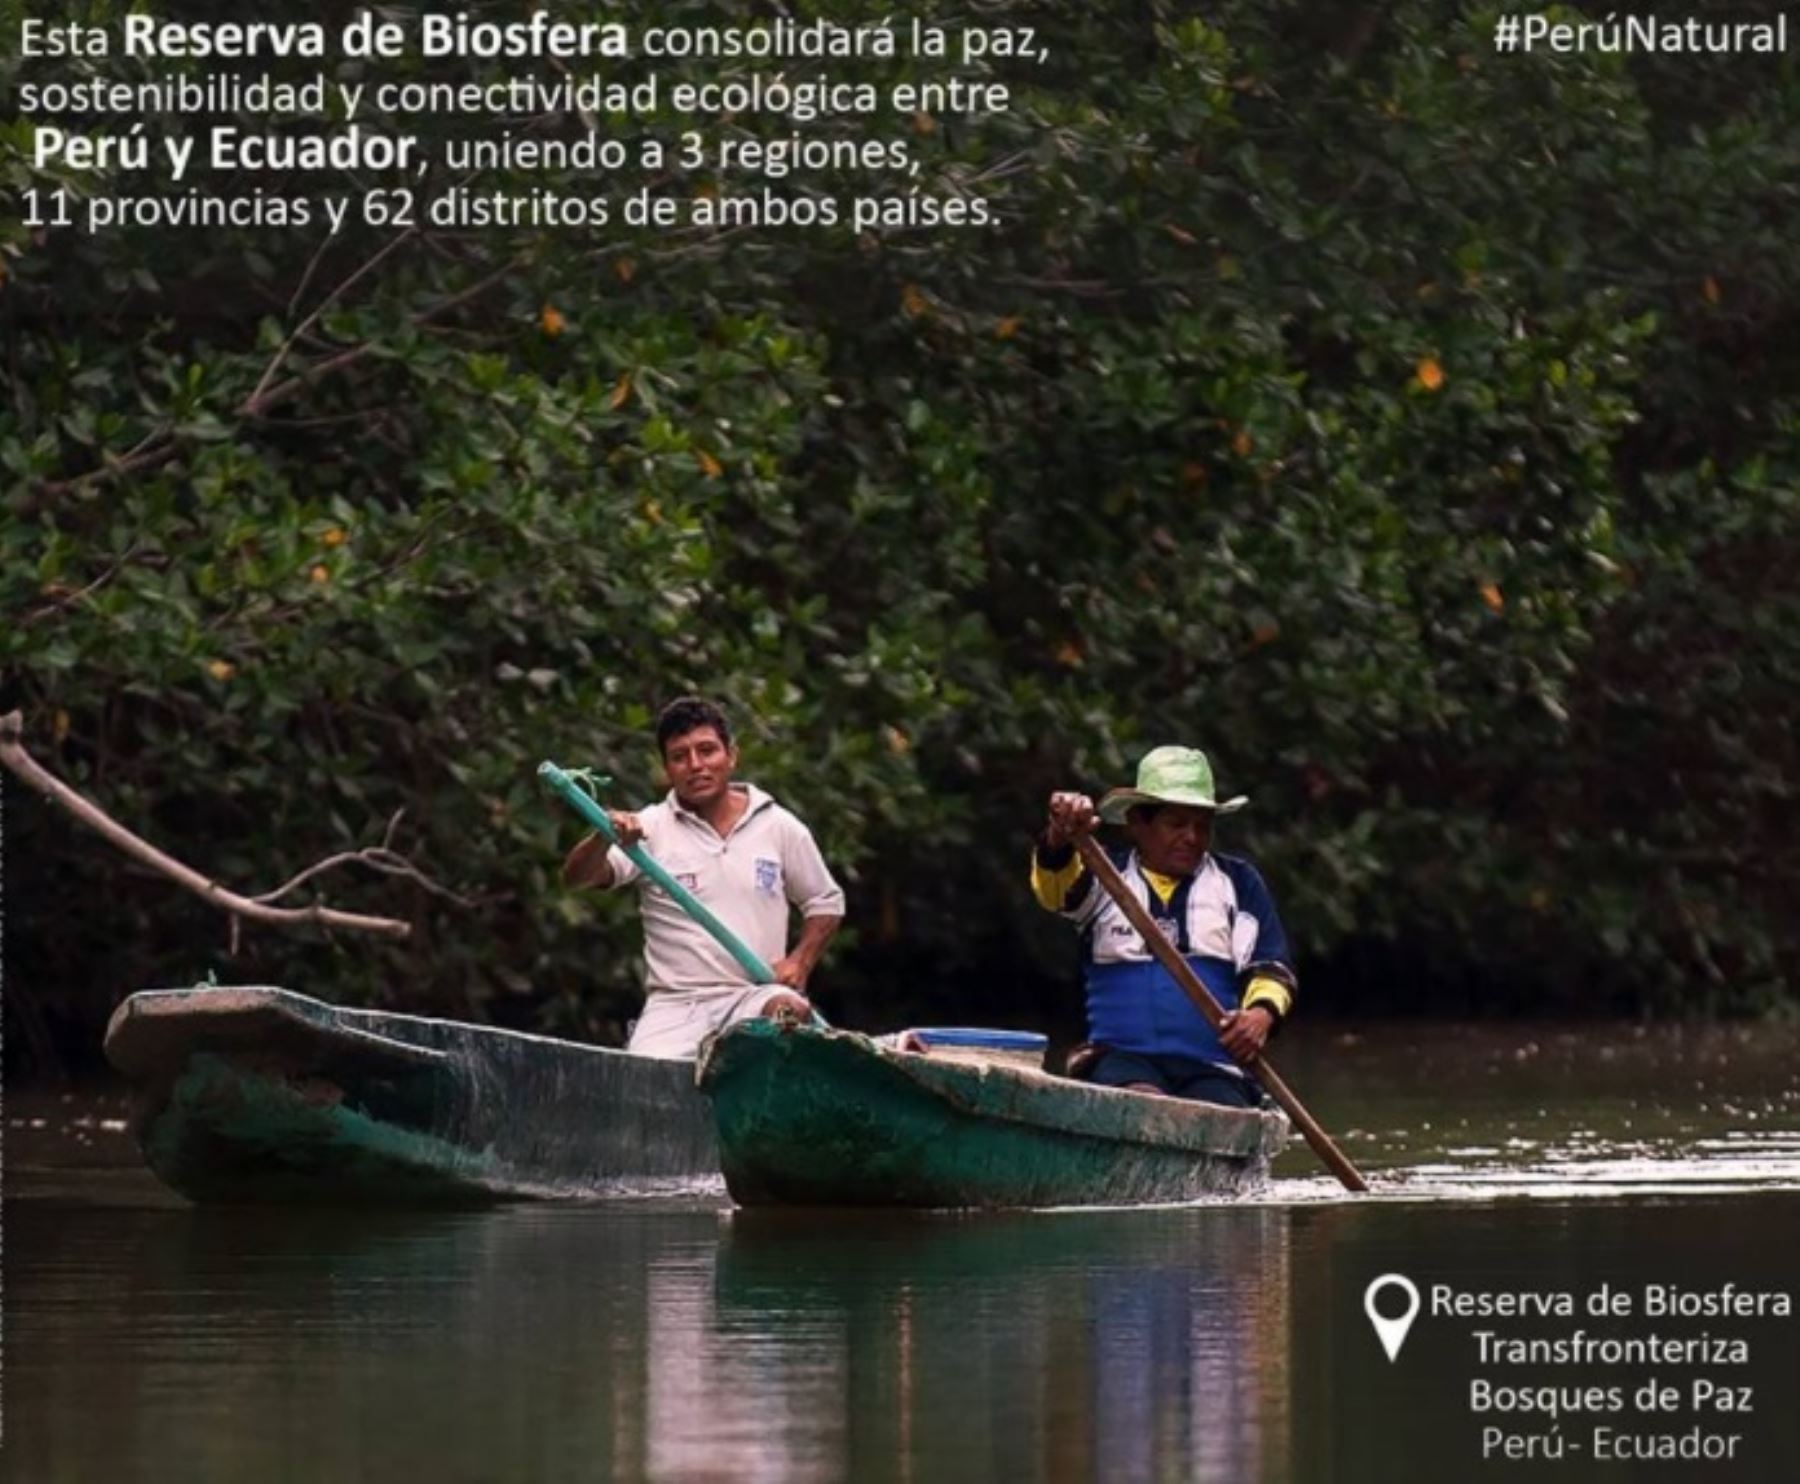 Perú y Ecuador se convirtieron en un referente de conservación de la diversidad biológica de América del Sur con el reconocimiento de la Reserva de Biosfera Transfronteriza Bosques de Paz, la primera en su clase en Sudamérica y que fue oficializada por los máximos representantes de los ministerios del Ambiente de ambos países.